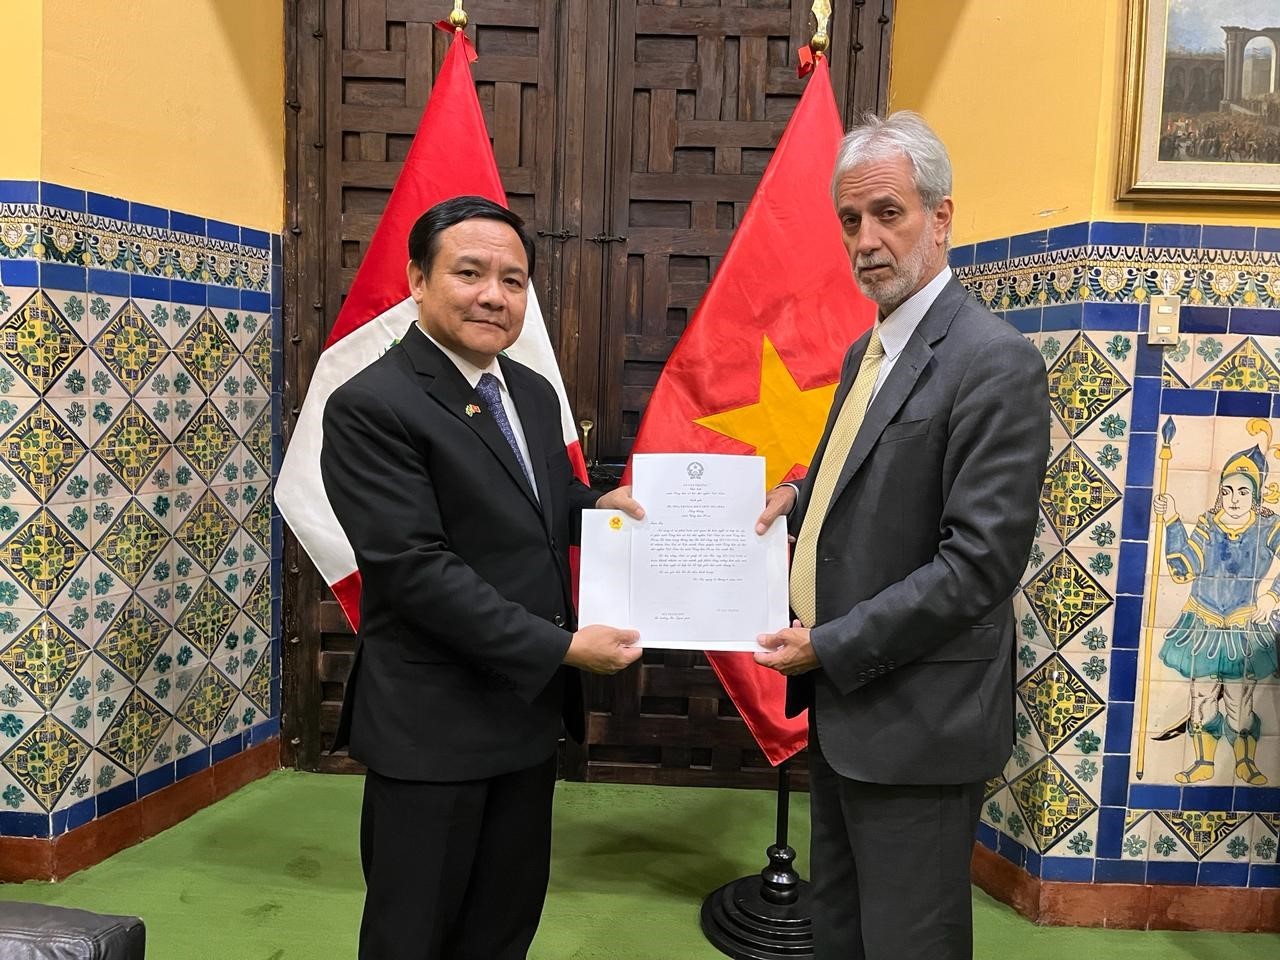 Đại sứ Bùi Văn Nghị trình Thư uỷ nhiệm tới Cục trưởng Cục Lễ tân Bộ Ngoại giao Peru